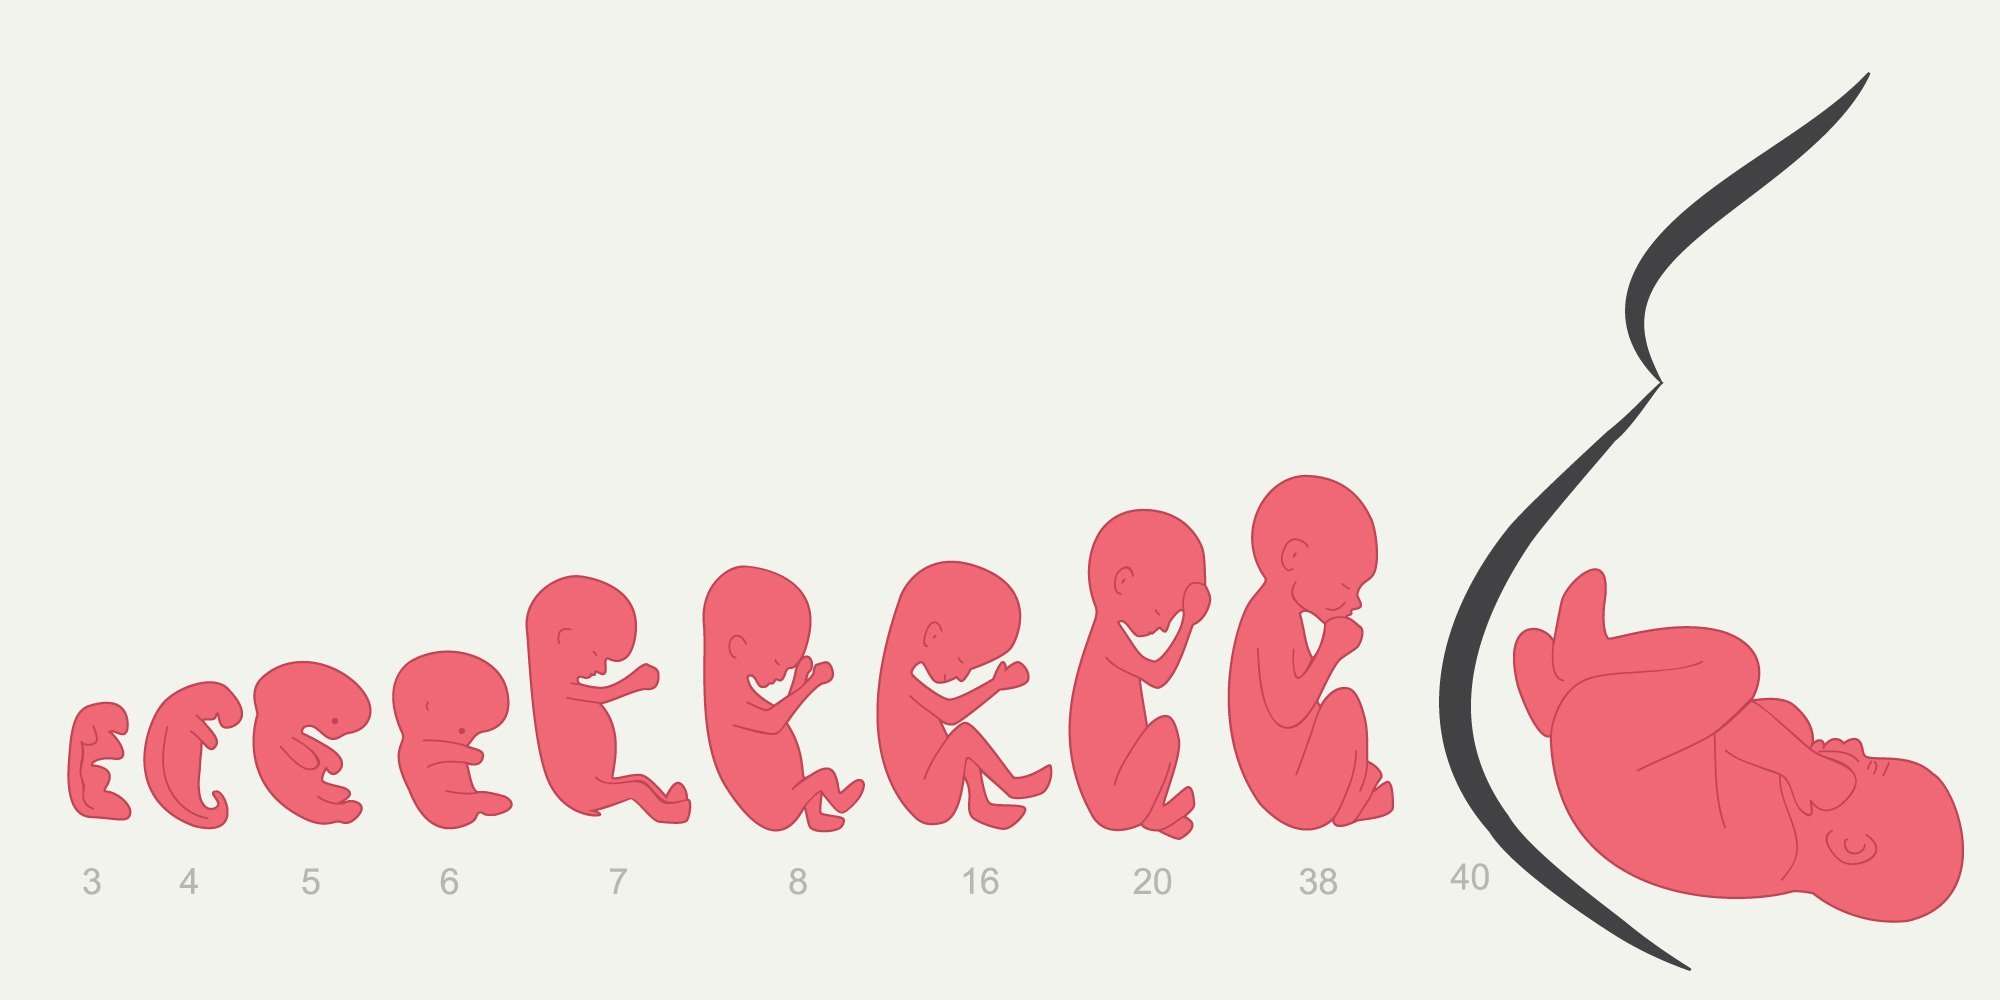 مراحل نمو الجنين في الرحم كل أسبوع حتى يوم الولادة